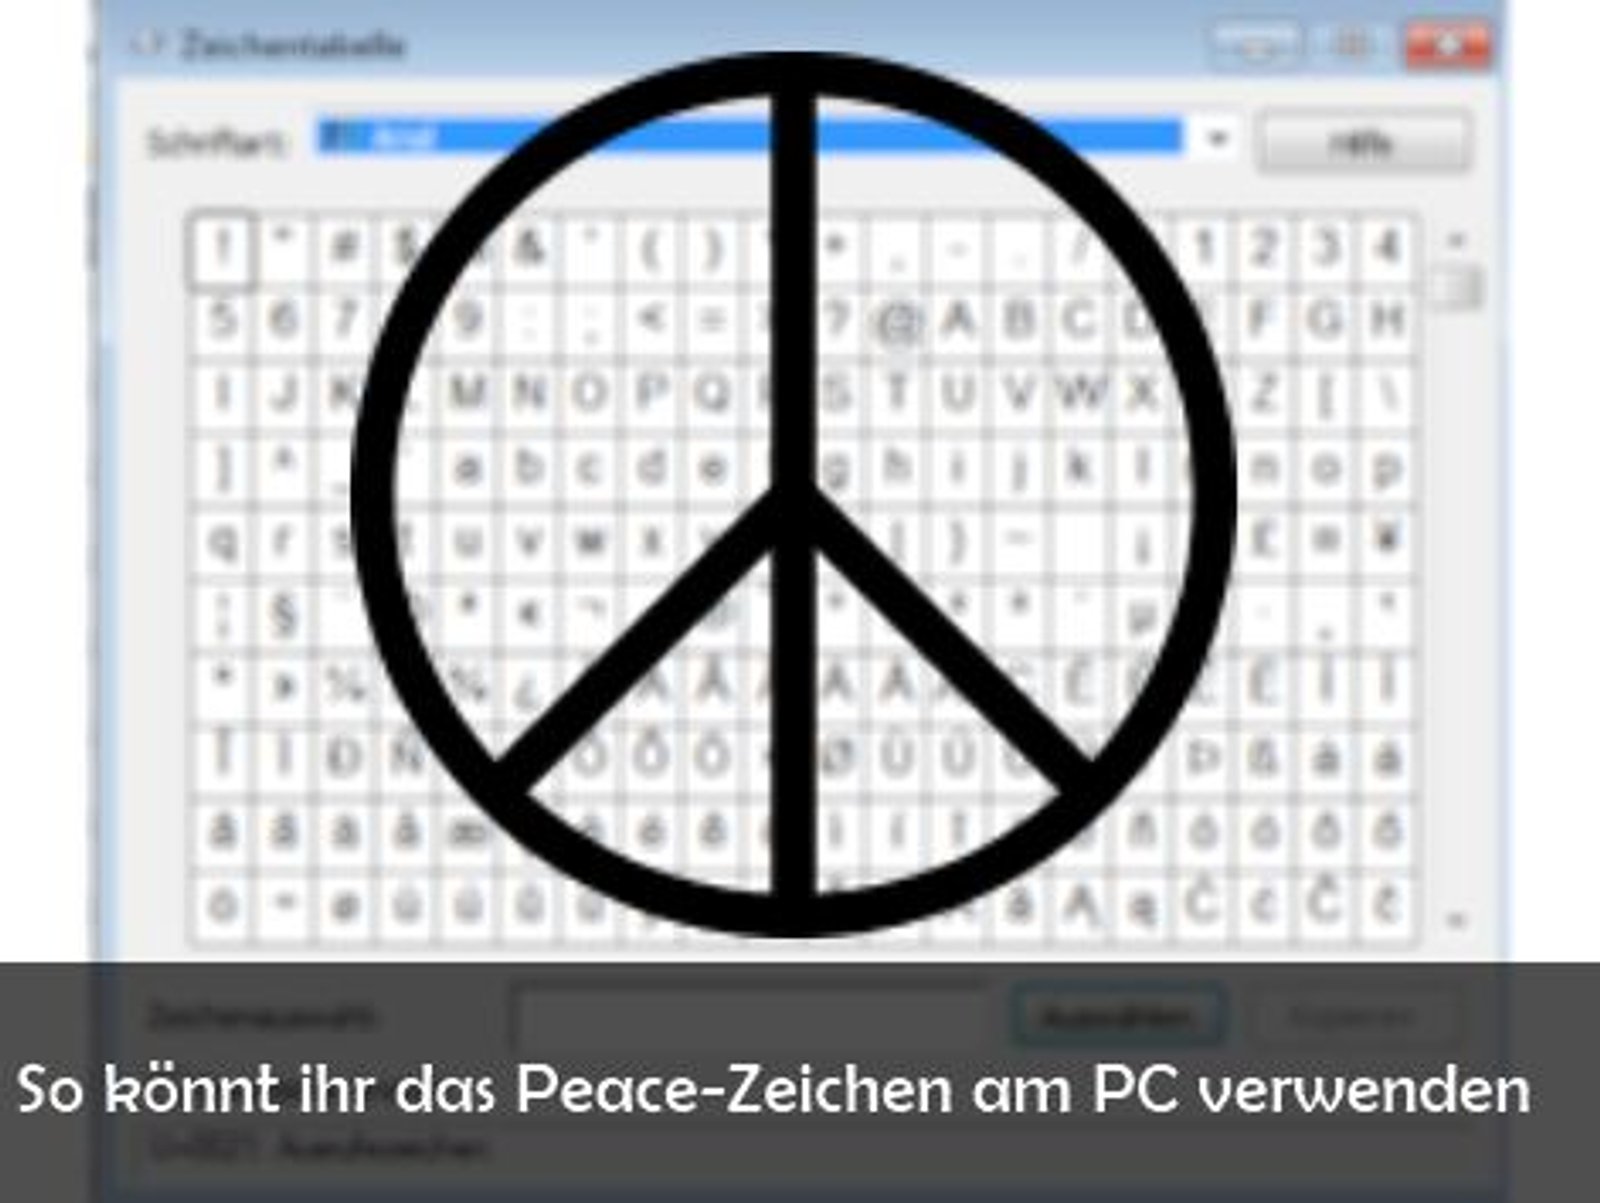 Peace-Zeichen am PC schreiben bei Facebook und Co. und seine Bedeutung